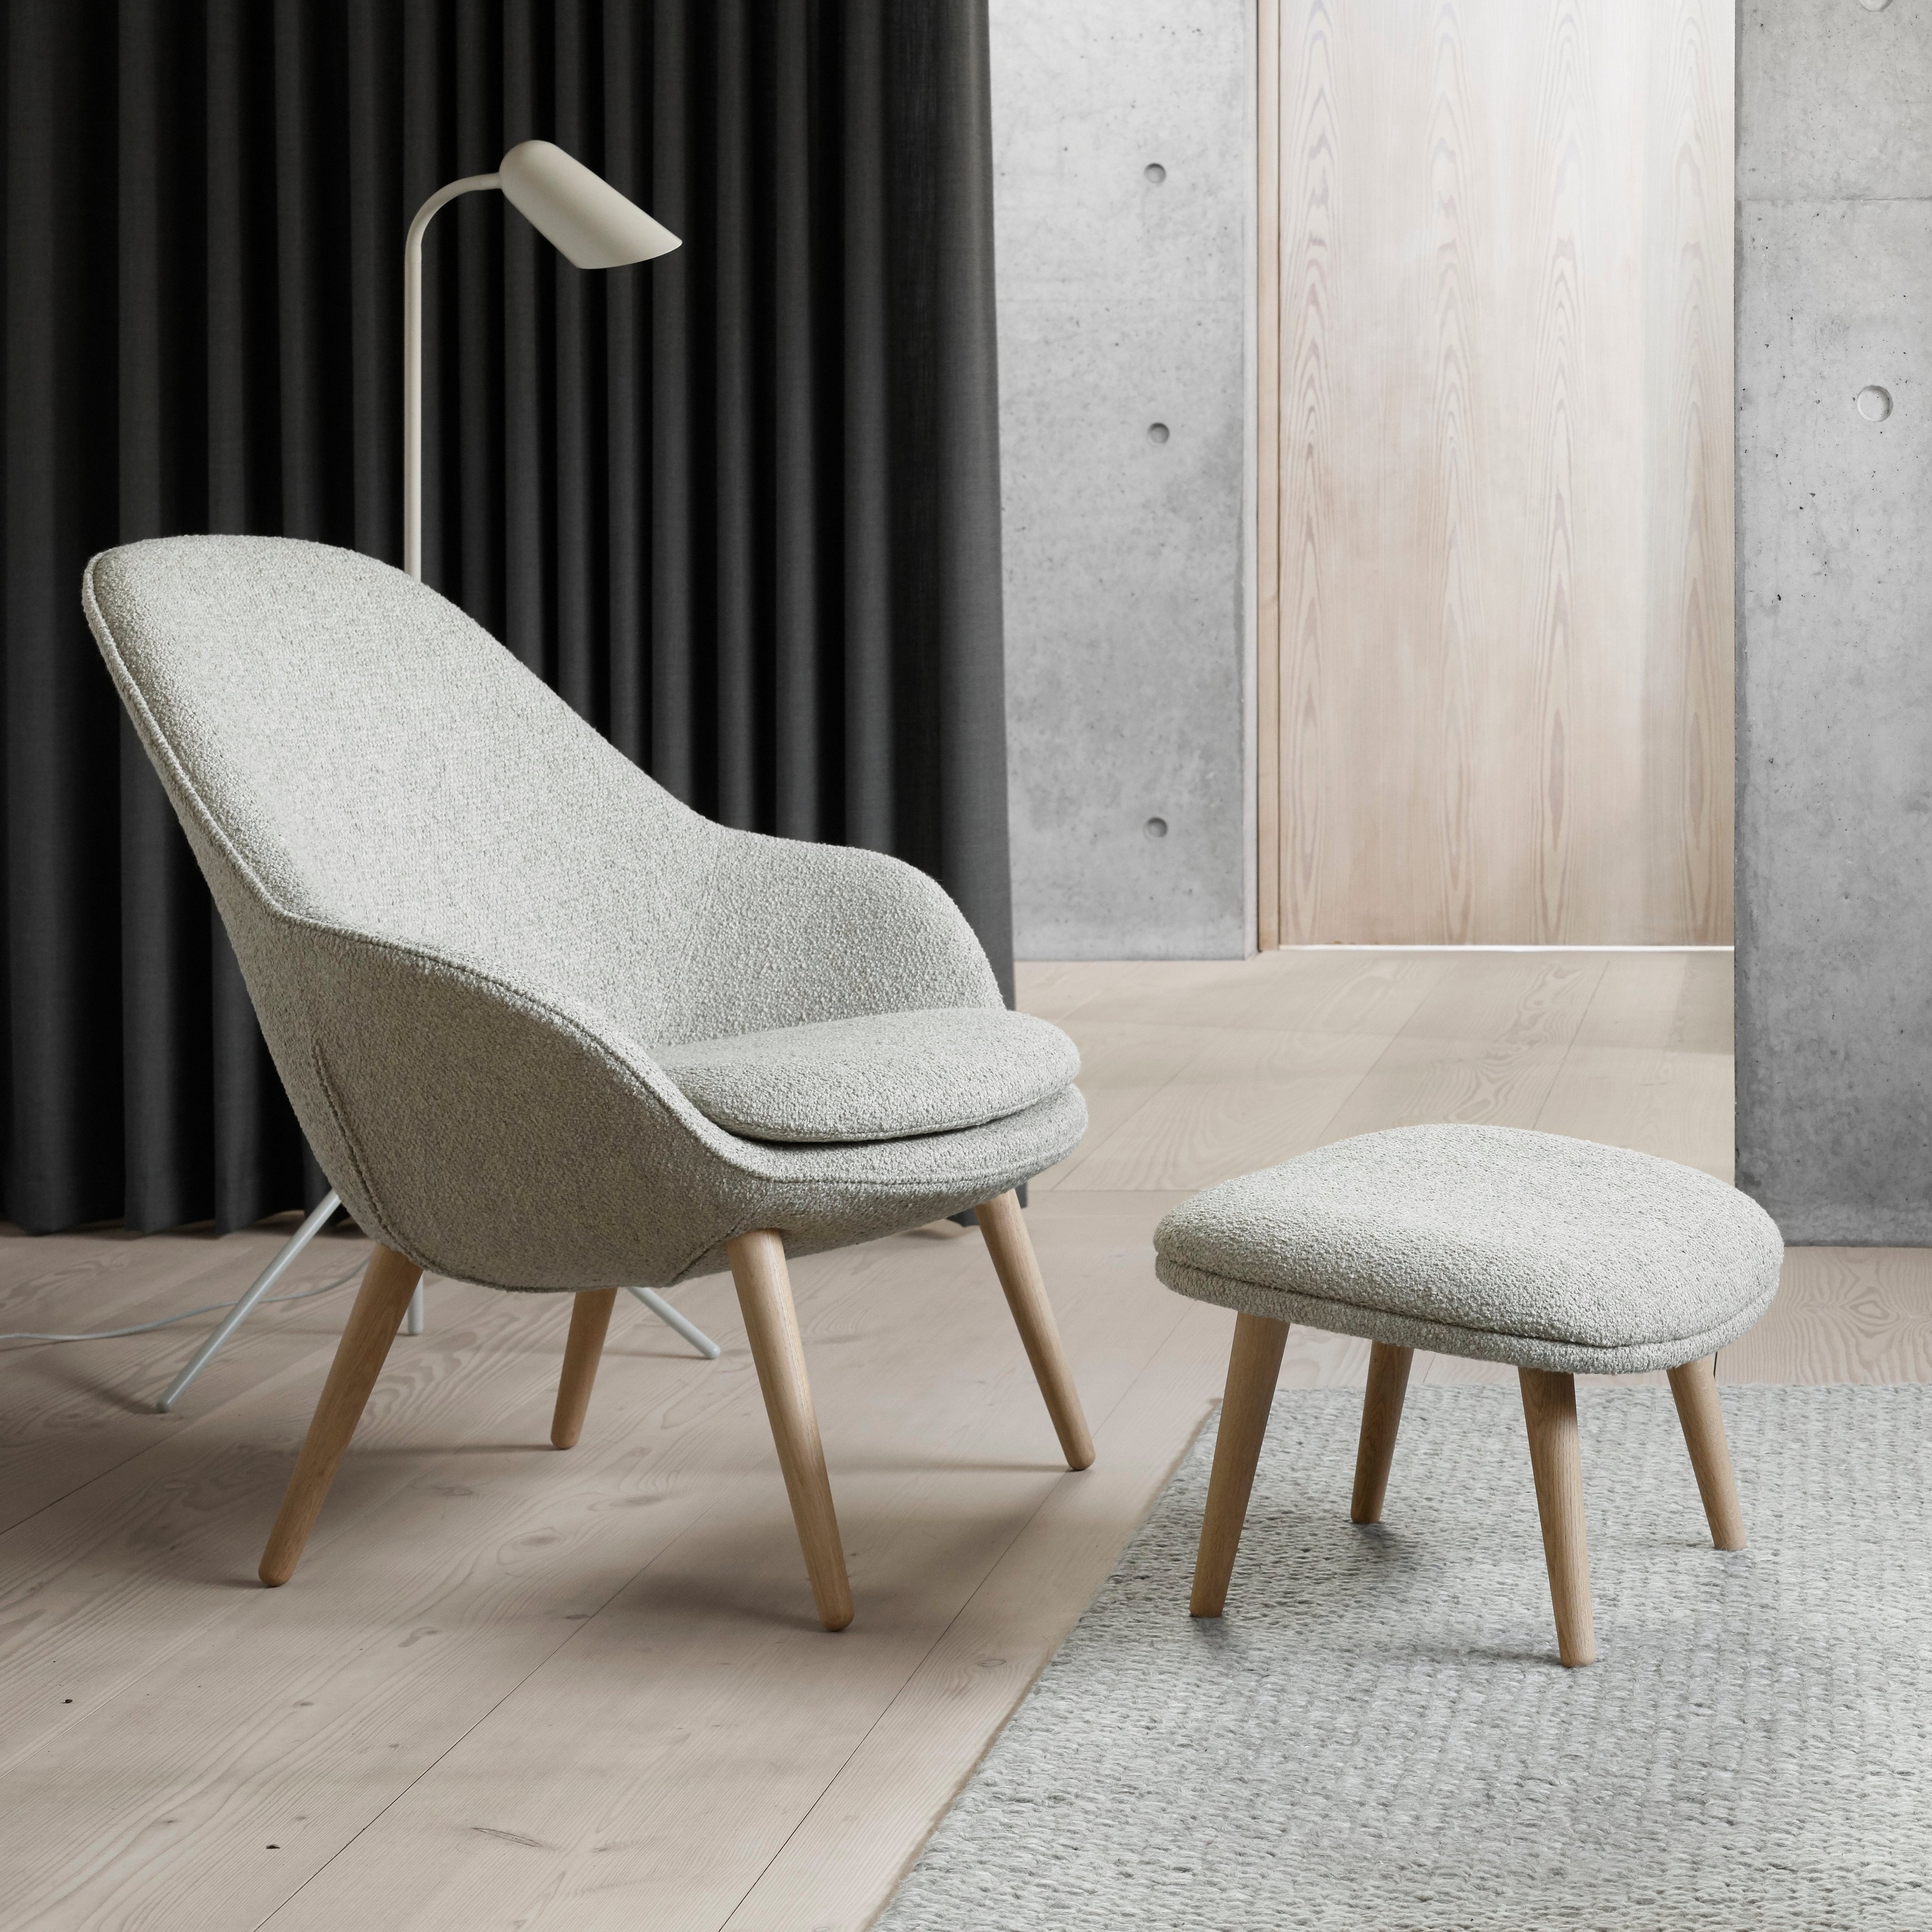 Moderne stol sammen med matchende fodskammel, gulvlampe, mørke gardiner og detaljer i beton.